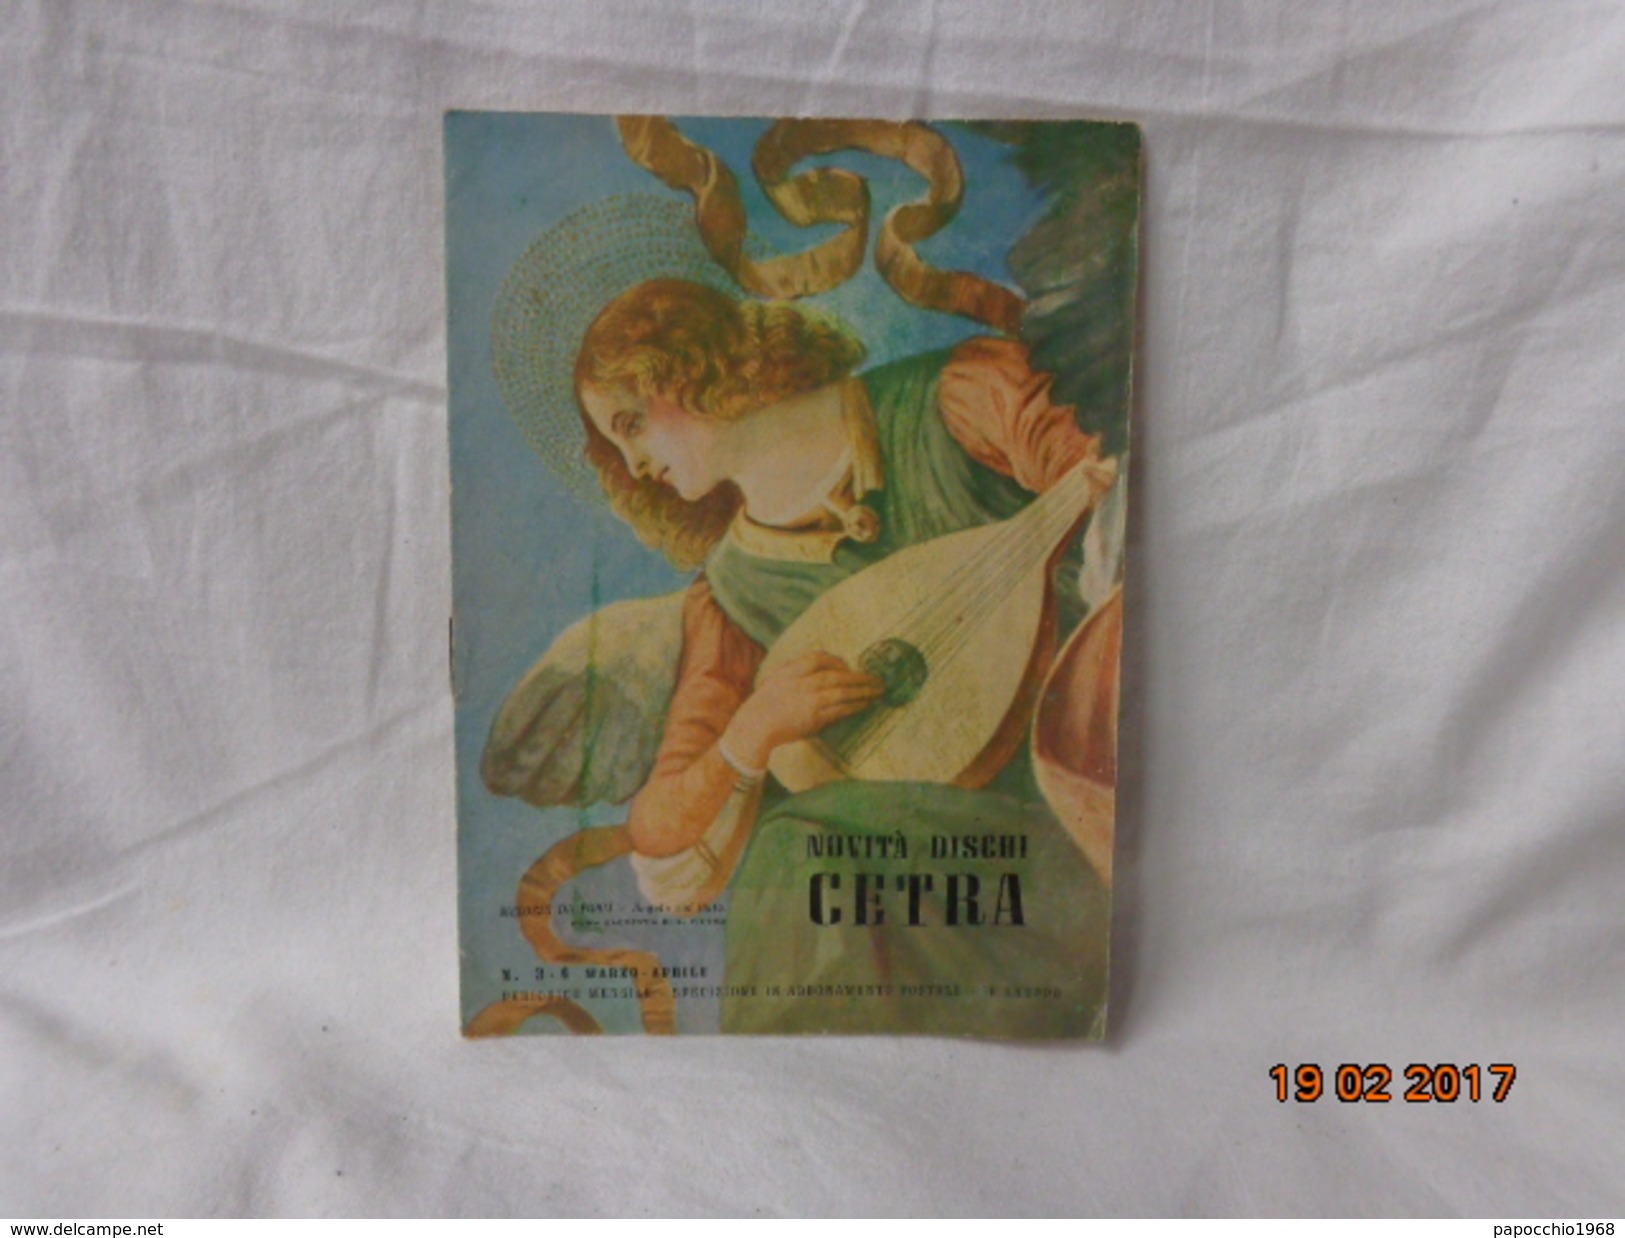 CATALOGO NOVITA' DISCHI CETRA EPOCA 1950 - Volledige Verzamelingen